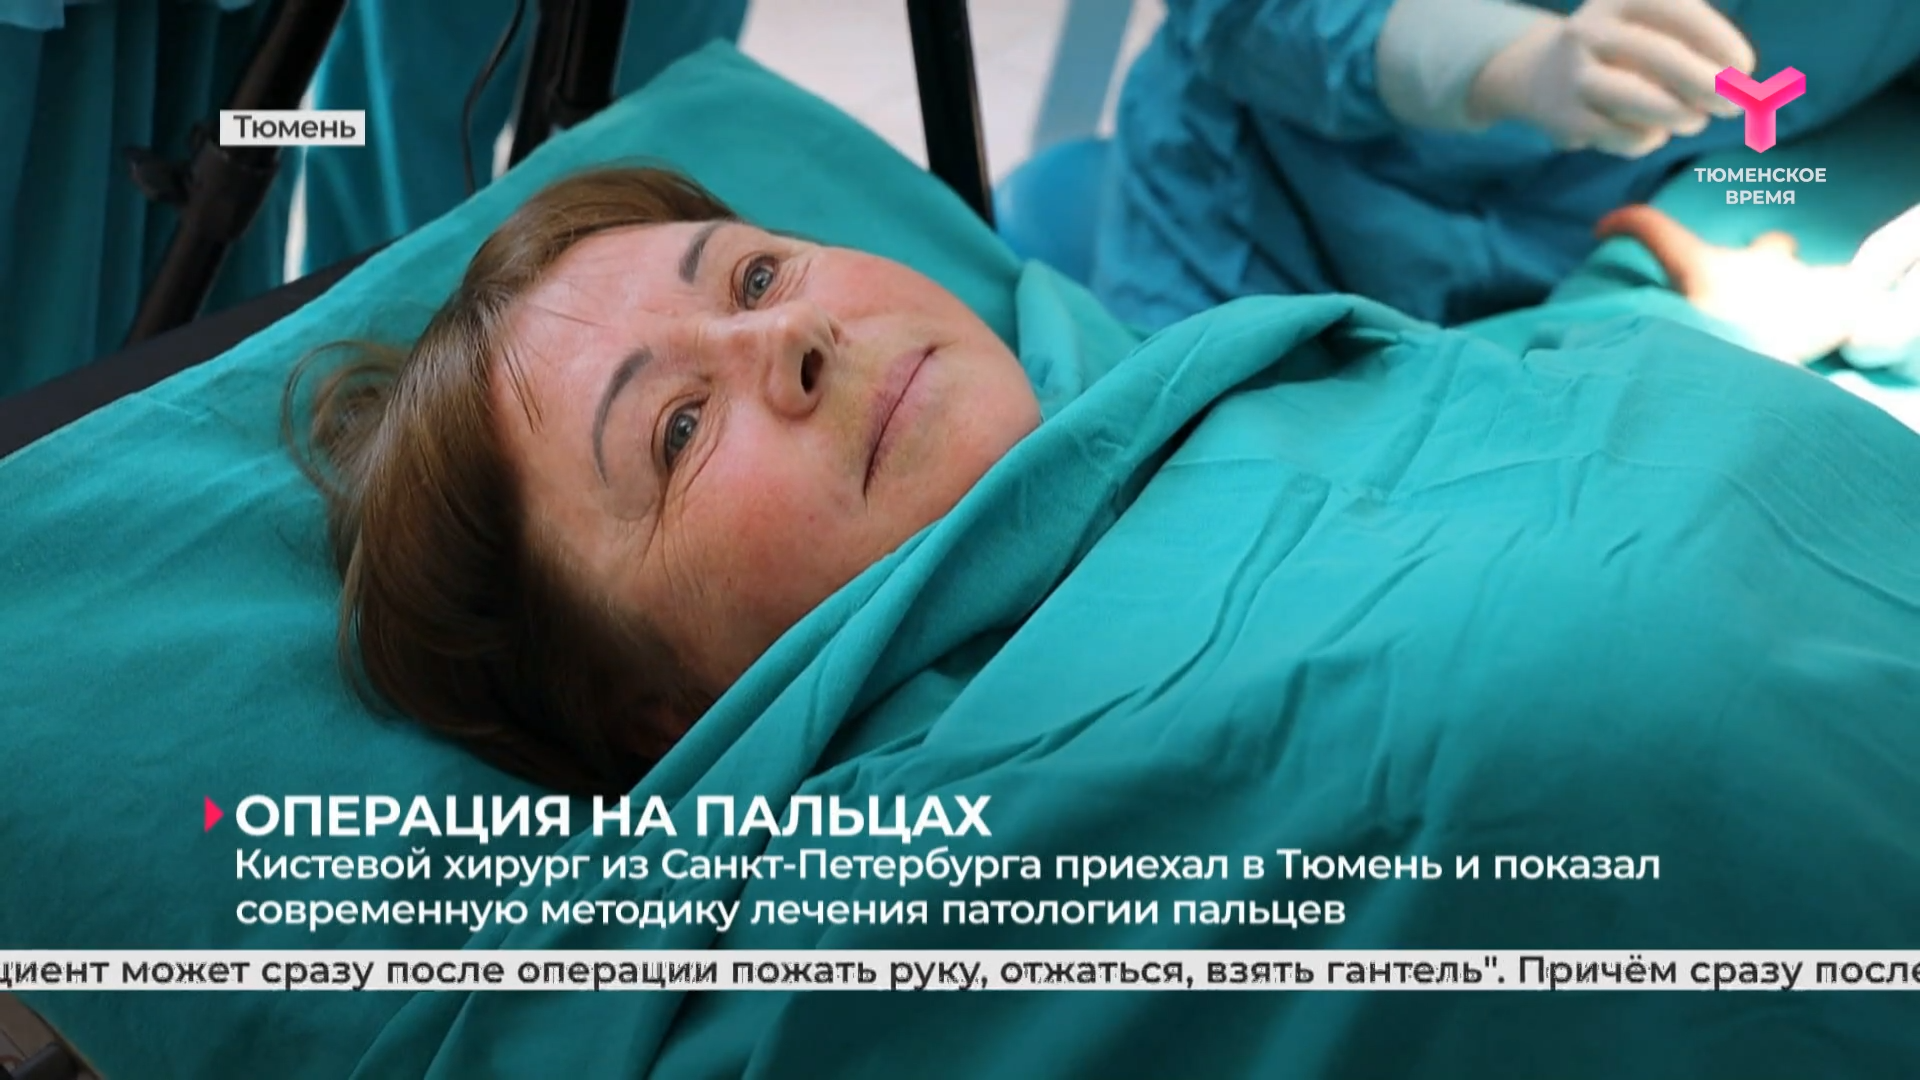 Кистевой хирург из Санкт-Петербурга приехал в Тюмень и показал современную методику лечения